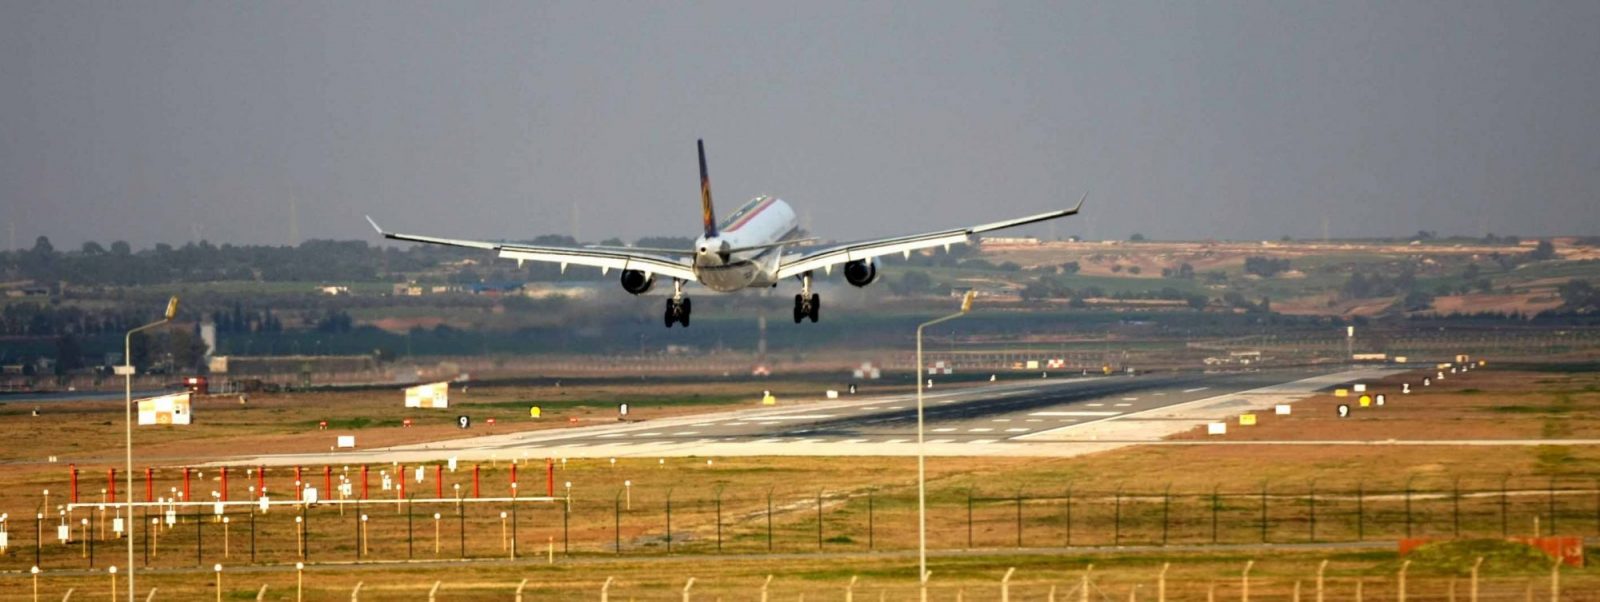 Aviokompanije na Balkanu: Arapi spašavaju JAT, Croatia Airlines čeka prodaju, BH Airlines pred kolapsom